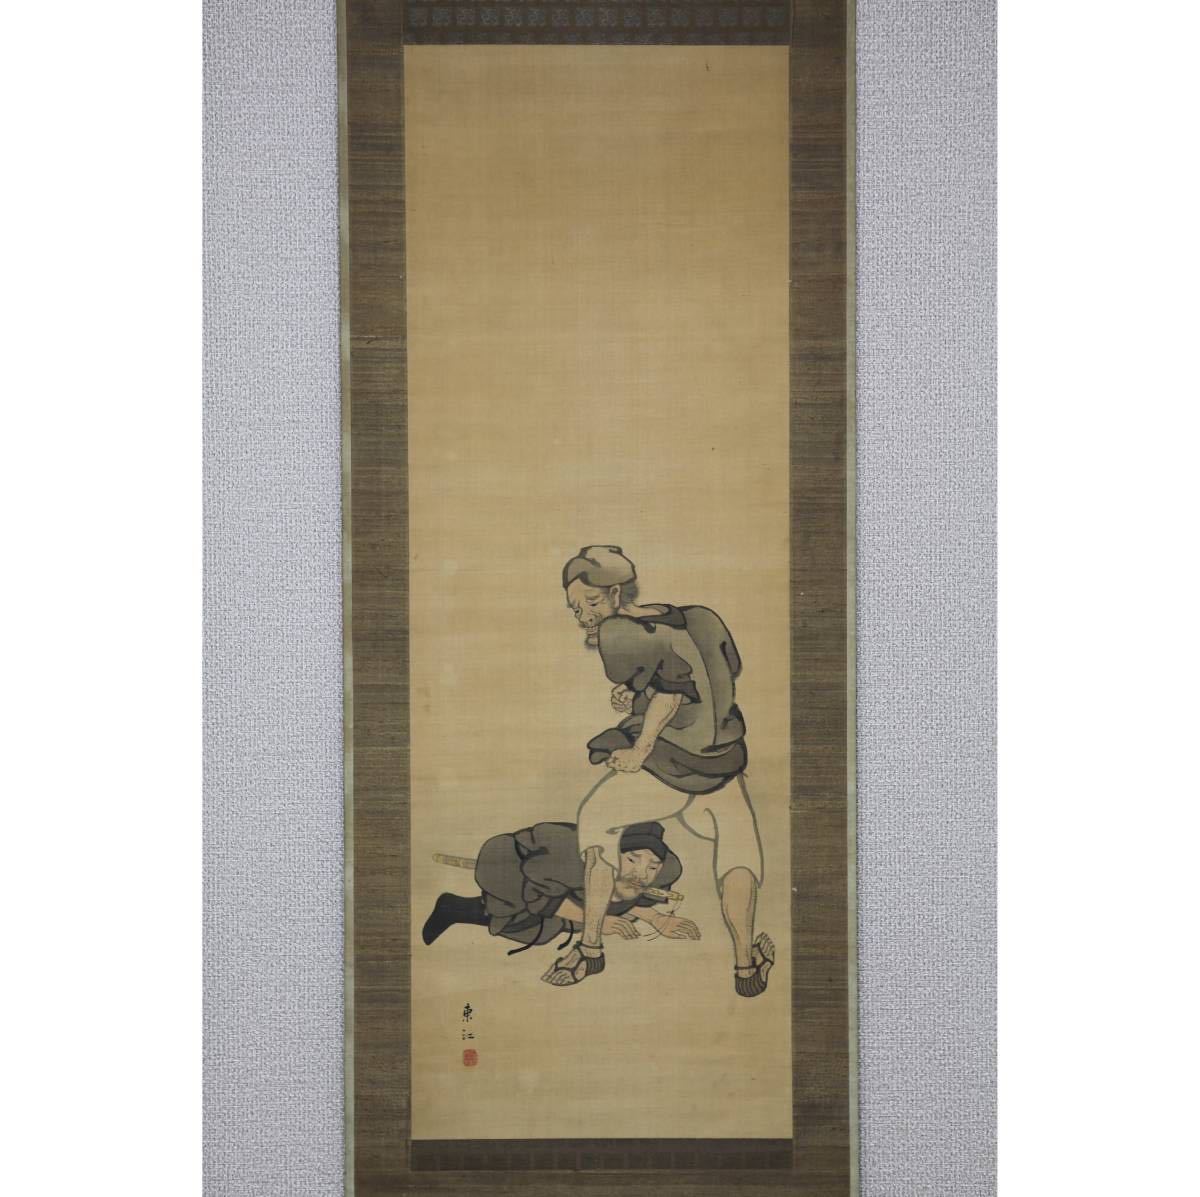 [Authentique] [Moulin à vent] Sawada Toko Portrait de Han Xin ◎ Peint à la main sur soie ◎ Milieu à la fin de la période Edo Hayashi Hokoku, originaire de Tokyo A étudié la peinture chinoise à l'école Ko Isai Toko, Peinture, Peinture japonaise, personne, Bodhisattva